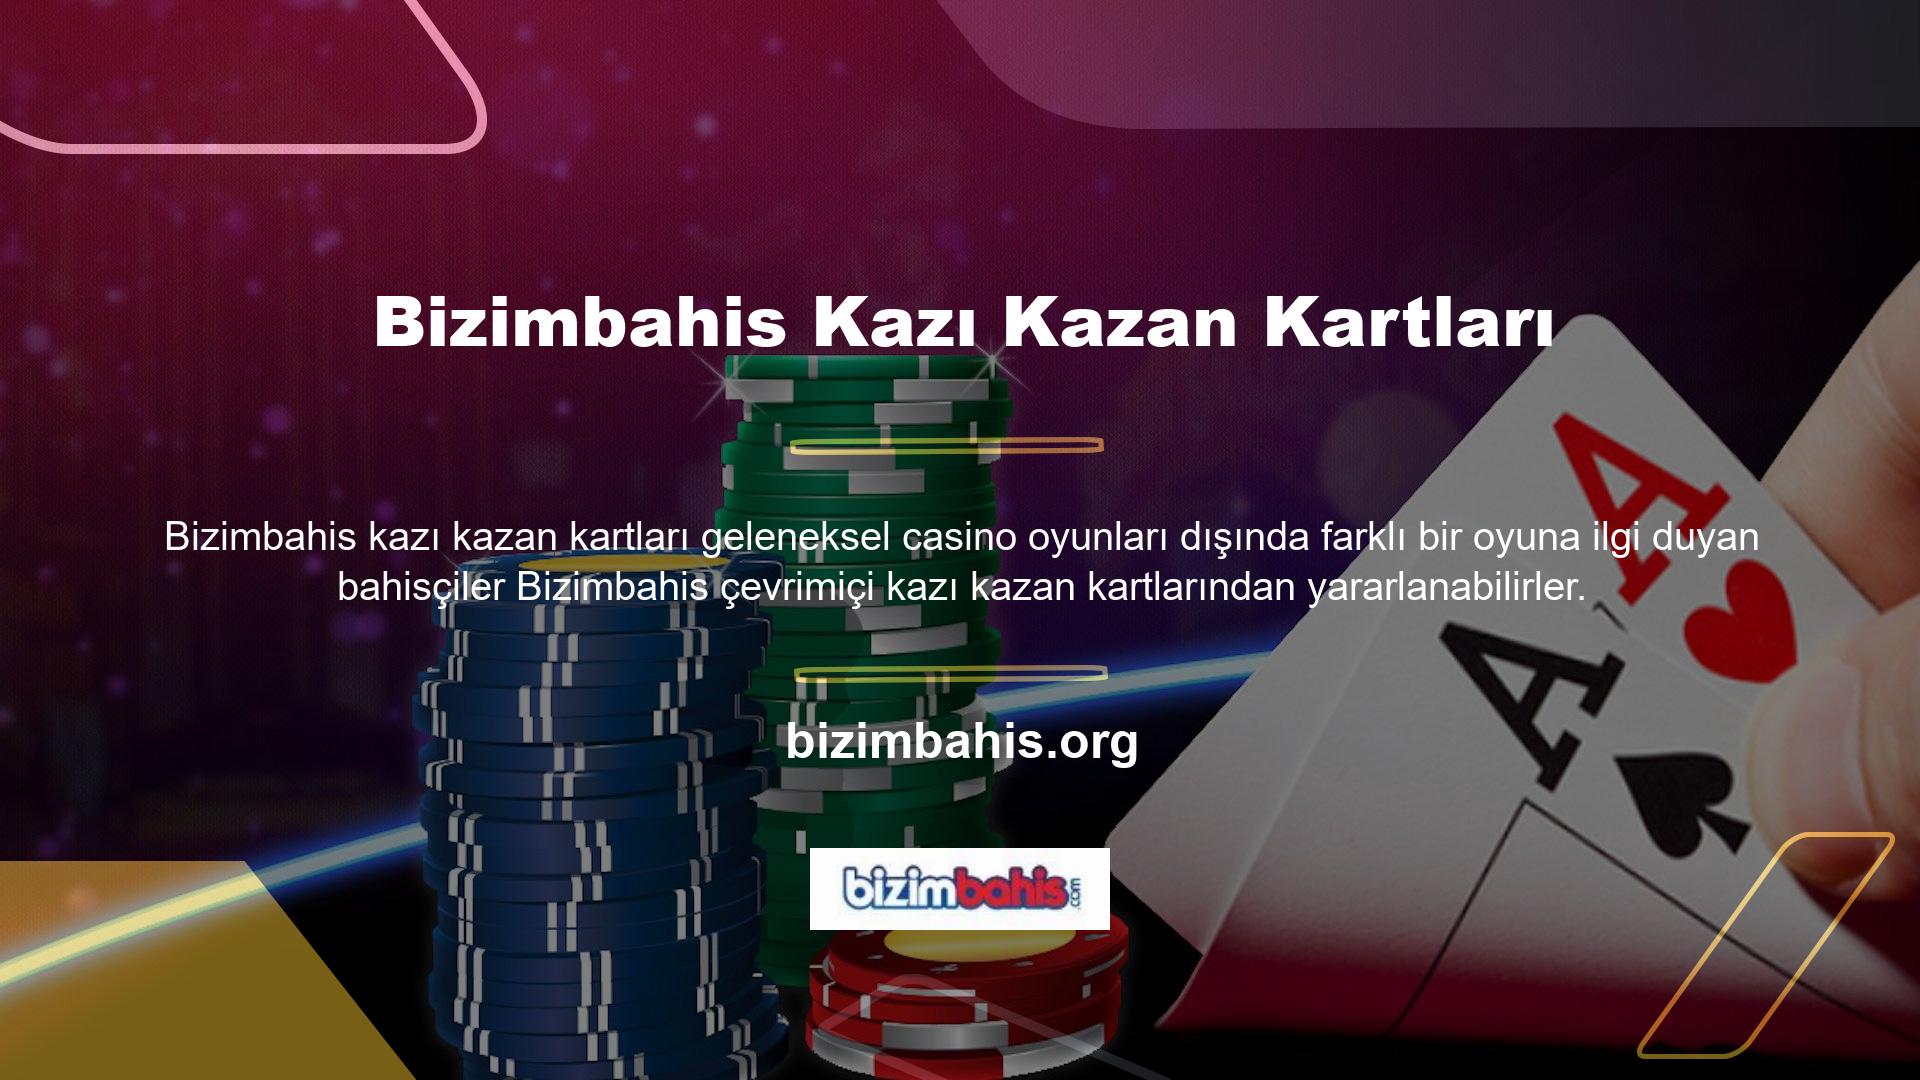 Bizimbahis sitesi yakın zamanda bir dizi kazı kazan kartı alternatifi ekledi